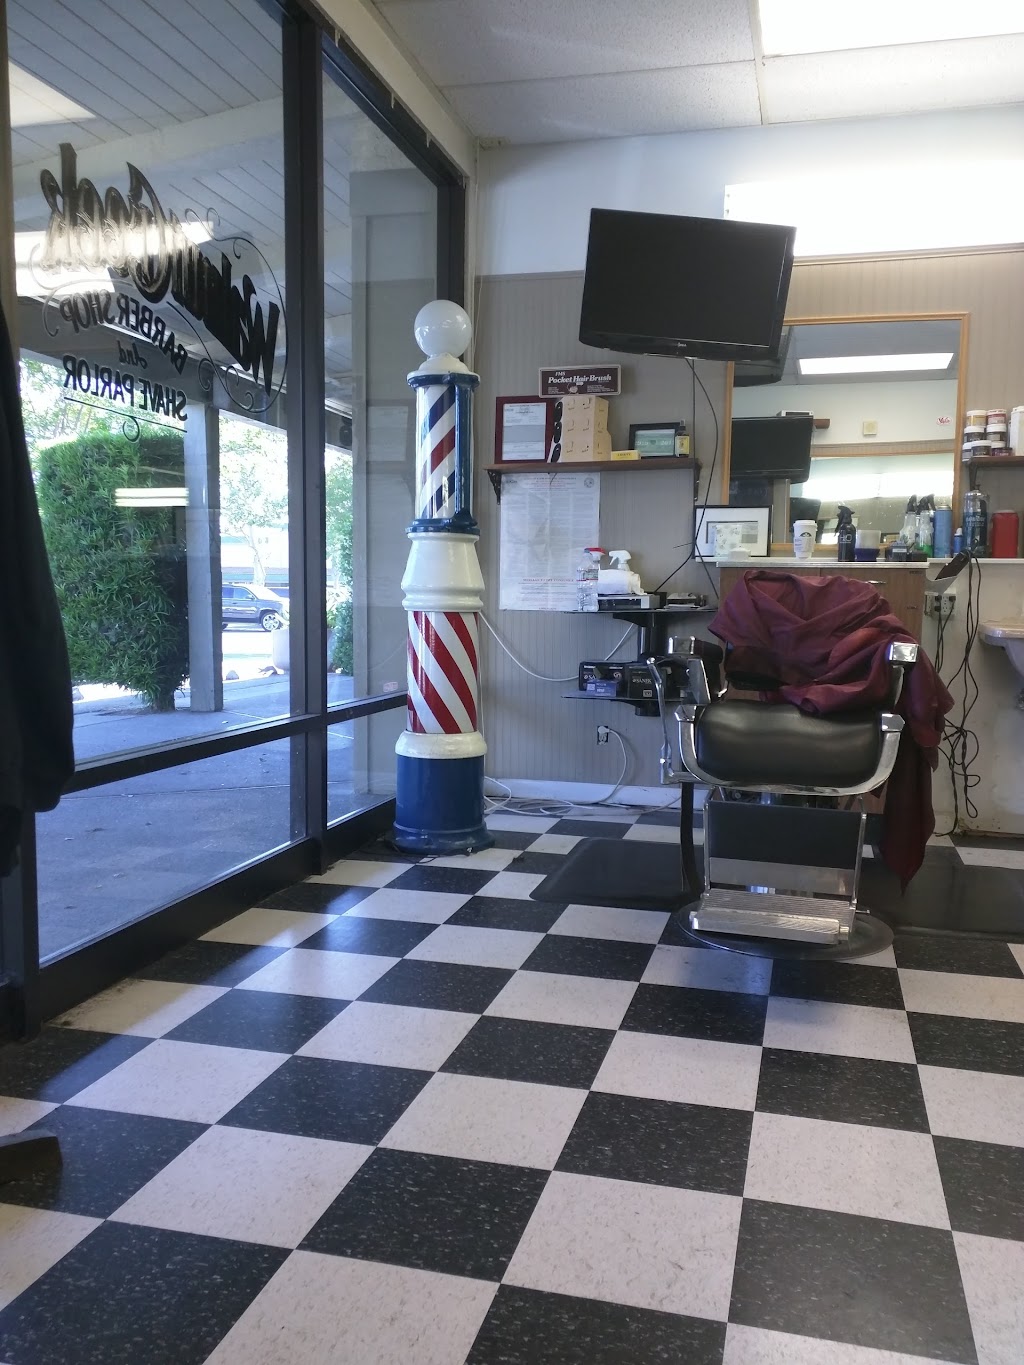 Walnut Creek Barber Shop | 1555A Palos Verdes Mall, Walnut Creek, CA 94597 | Phone: (925) 465-5039